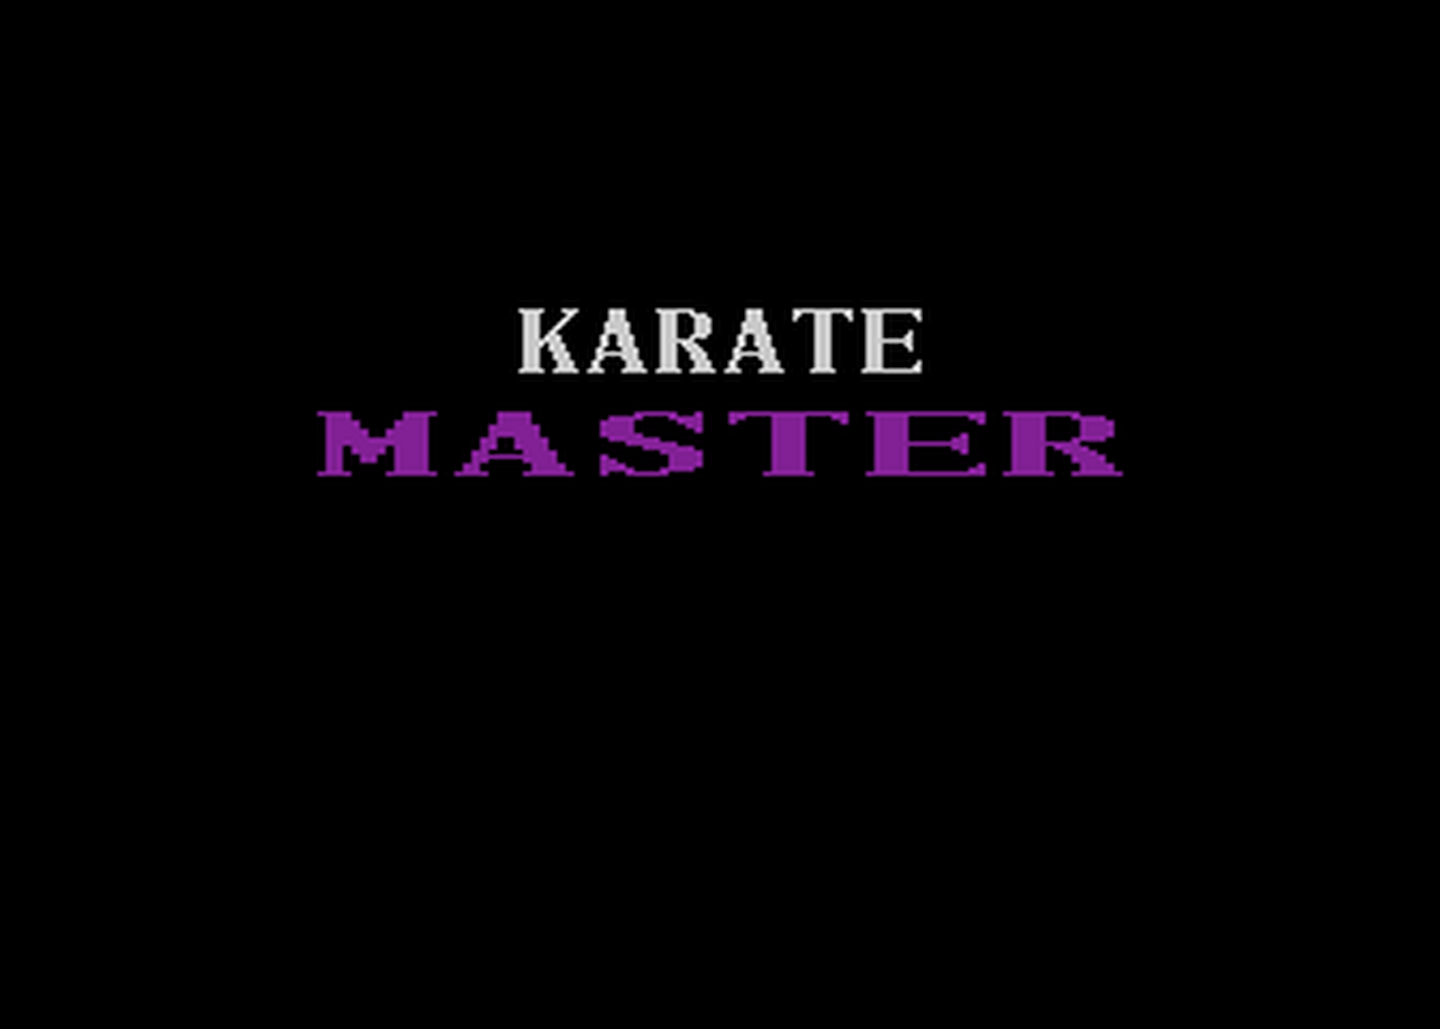 Atari GameBase Karate_Master (No_Publisher) 1986